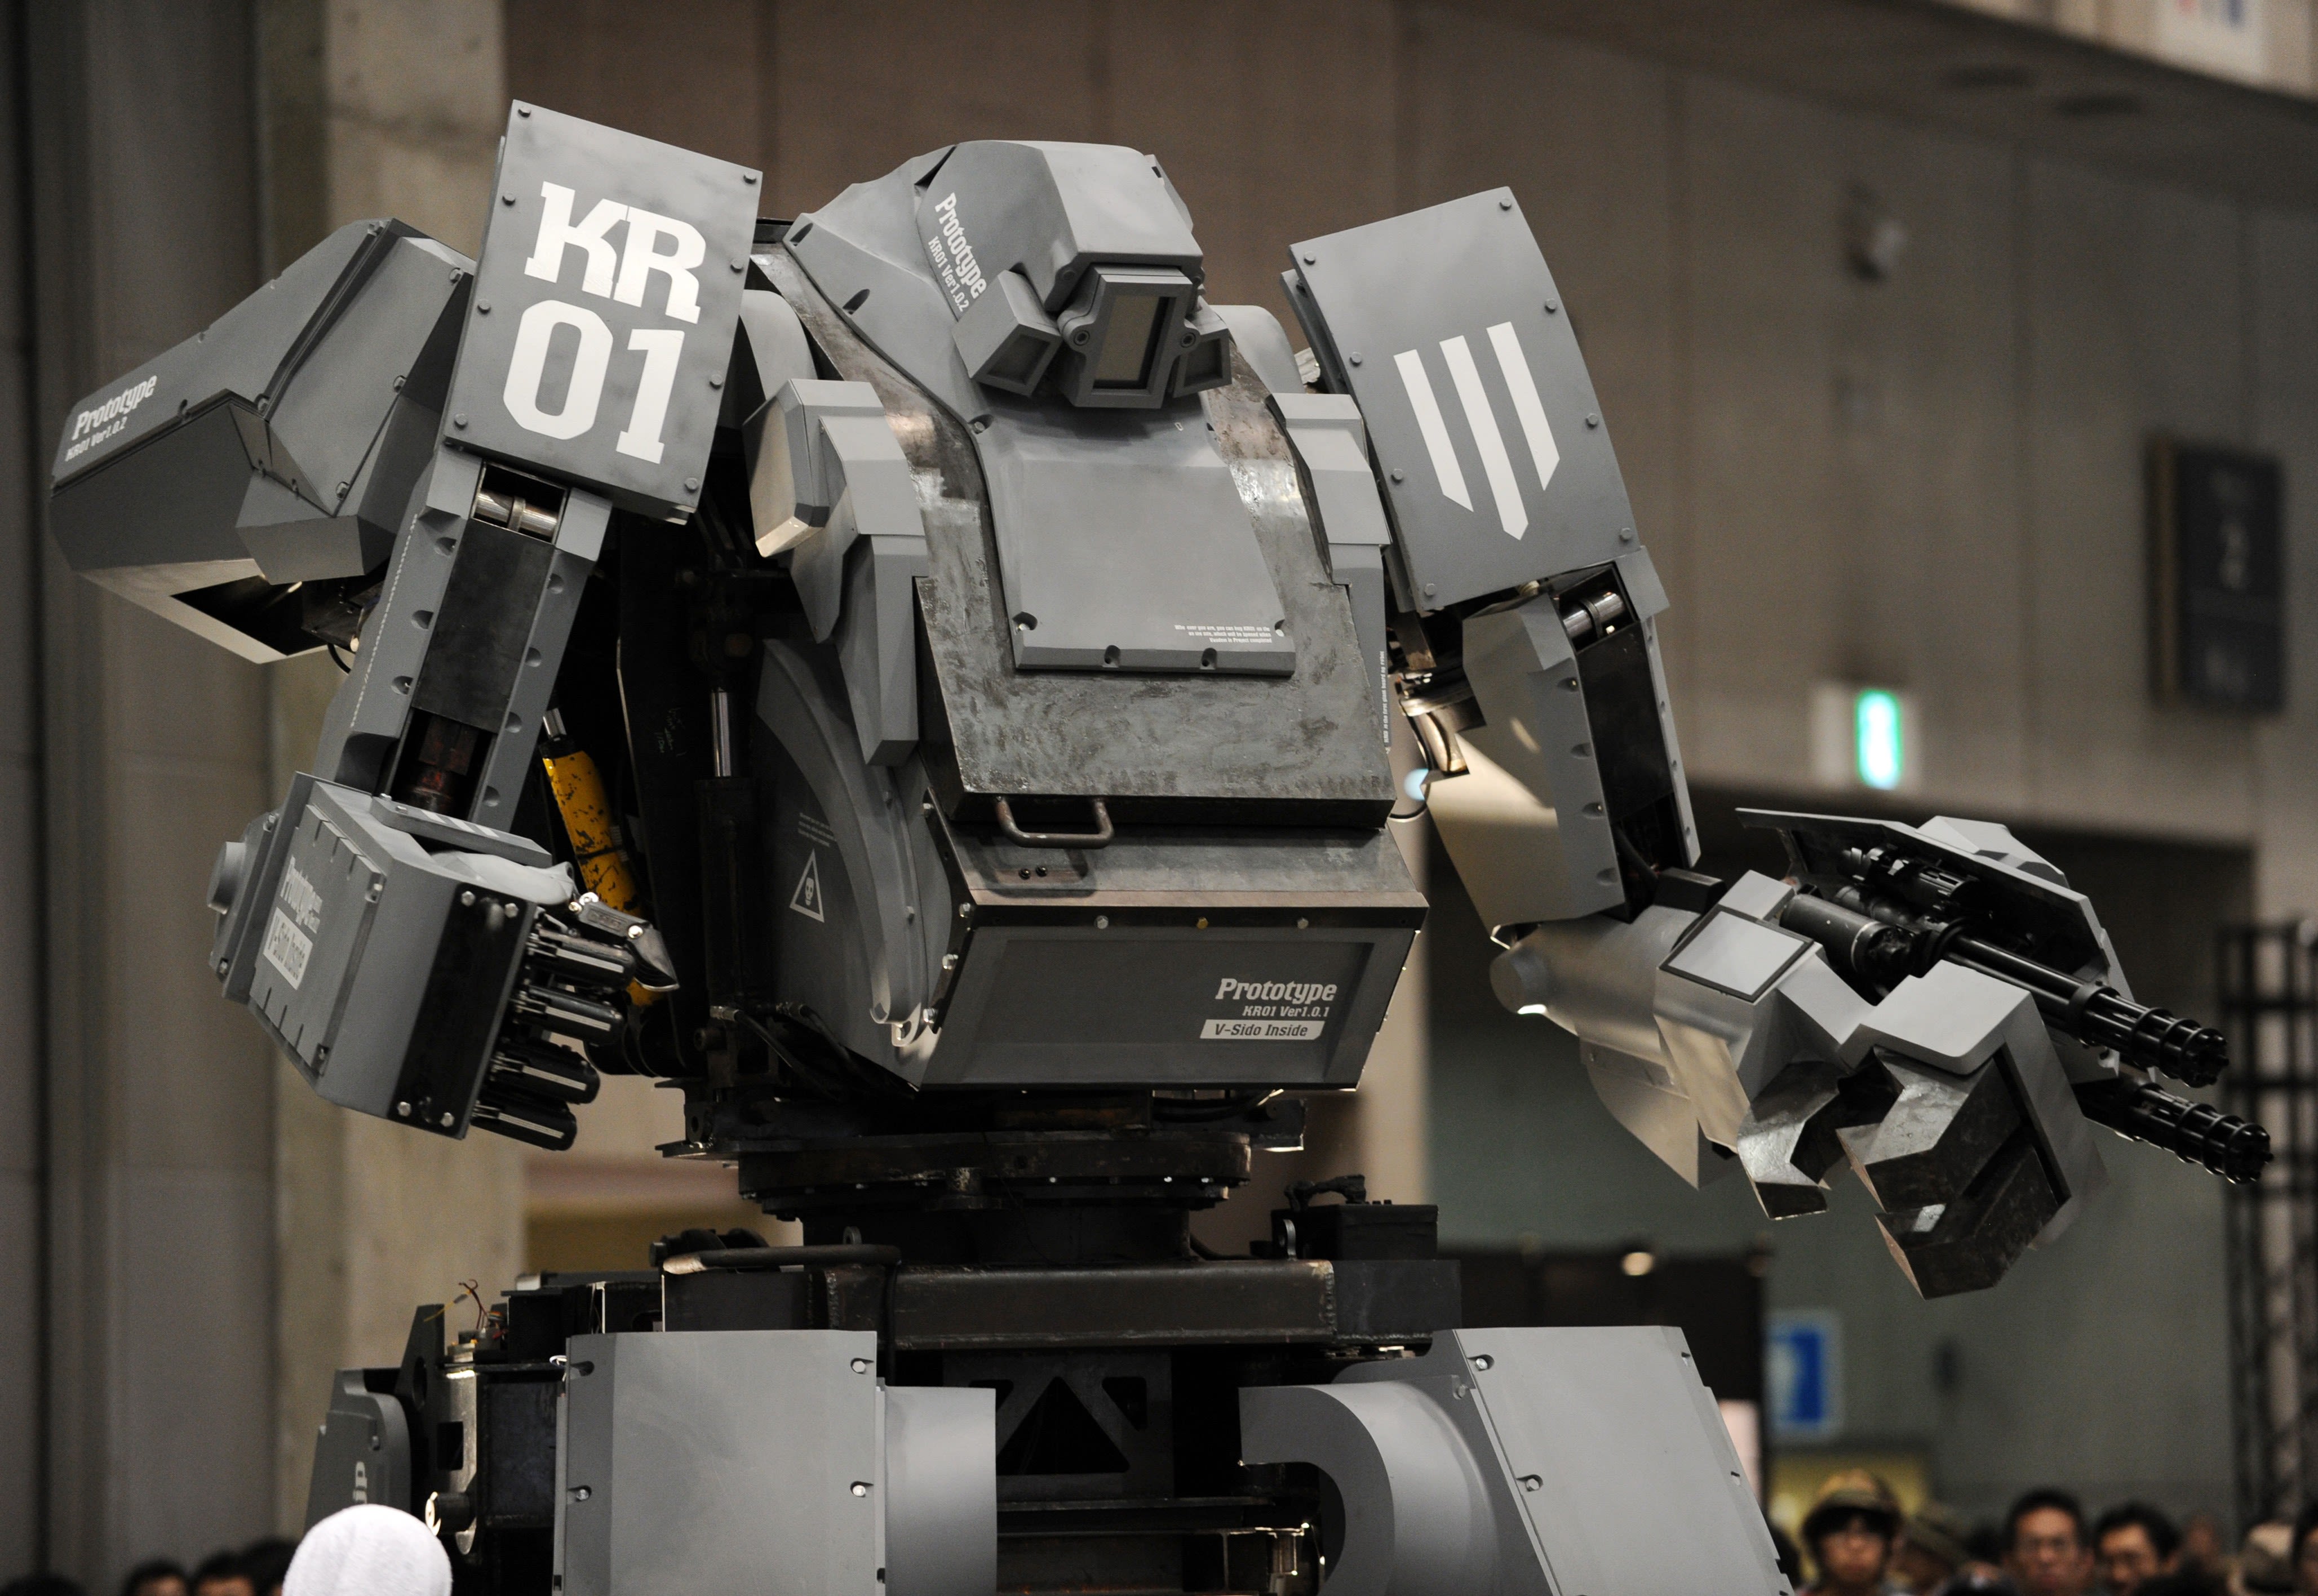 US Vs JP Giant Robot Fight Fantasy Might Be Reality Soon - SlashGear